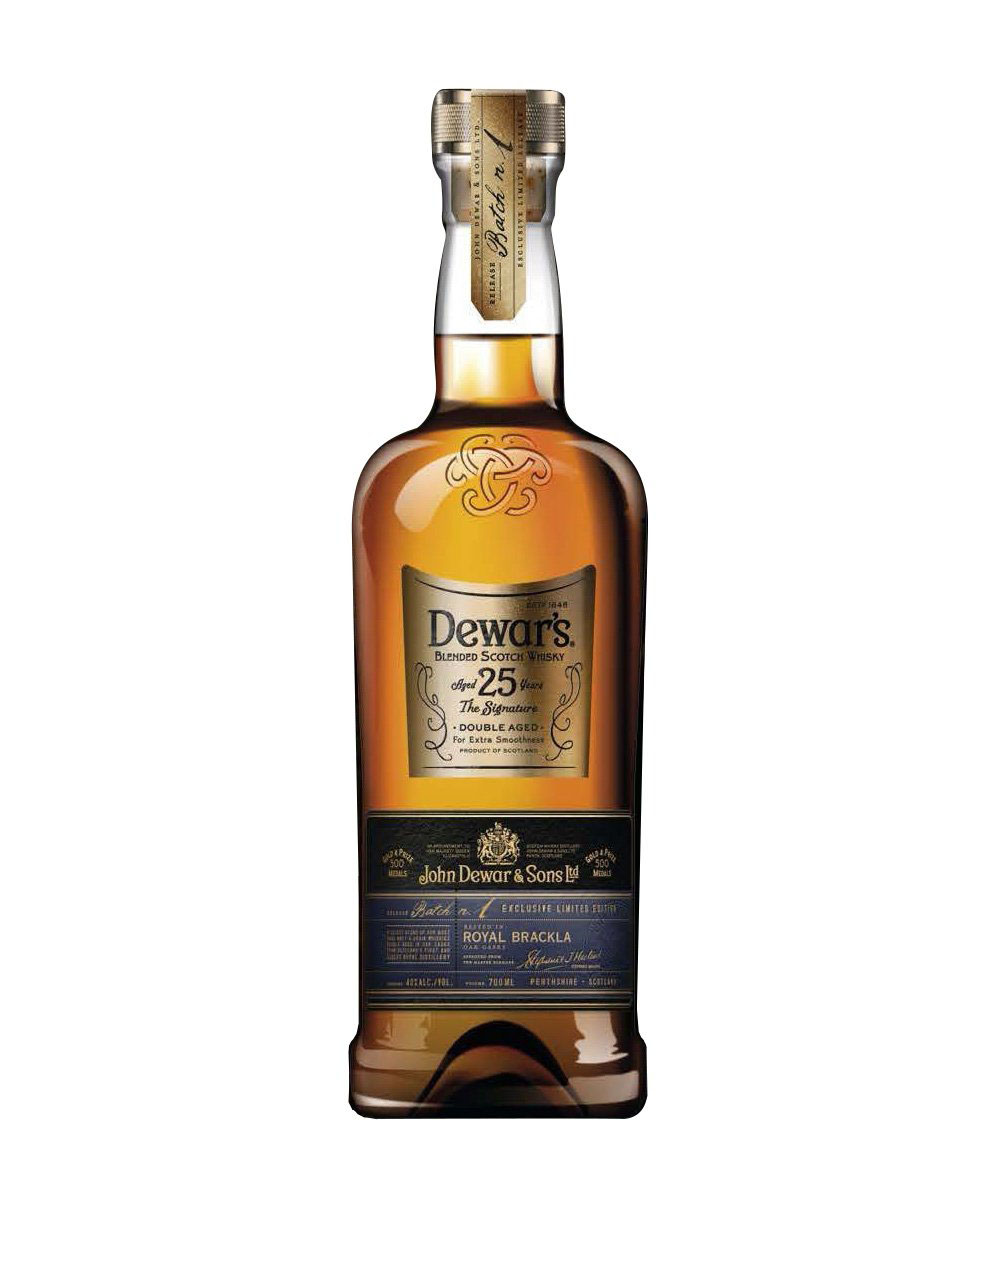 Ardbeg Auriverdes Single Malt Scotch Whisky